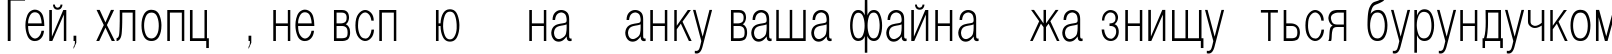 Пример написания шрифтом Helvetica_Condenced-Normal текста на украинском